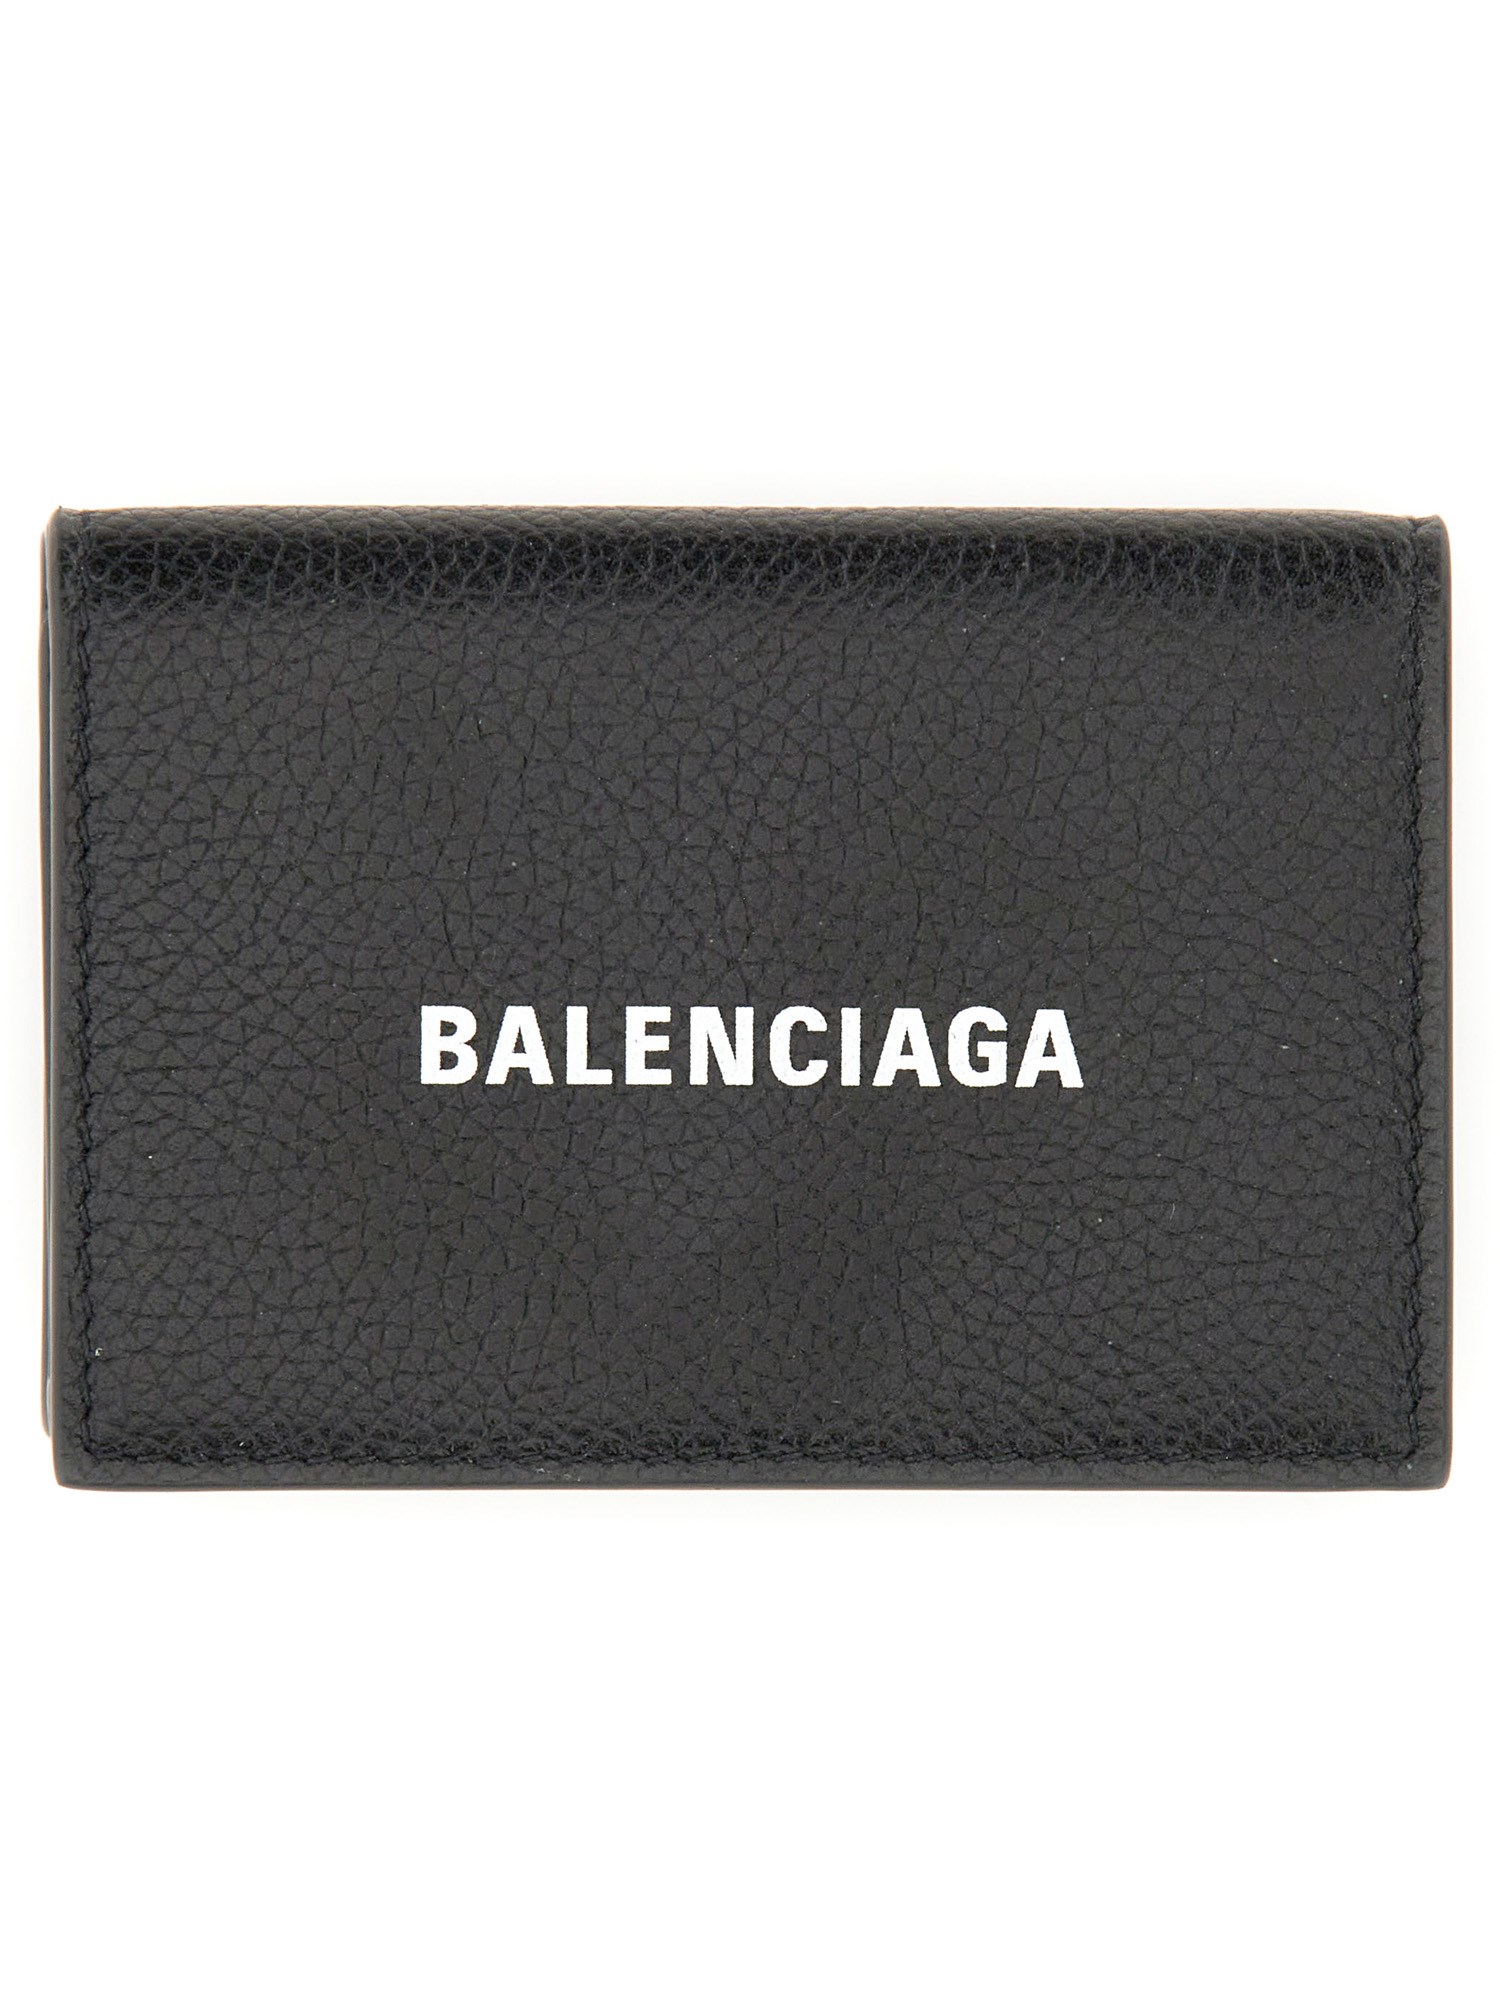 balenciaga wallet with logo